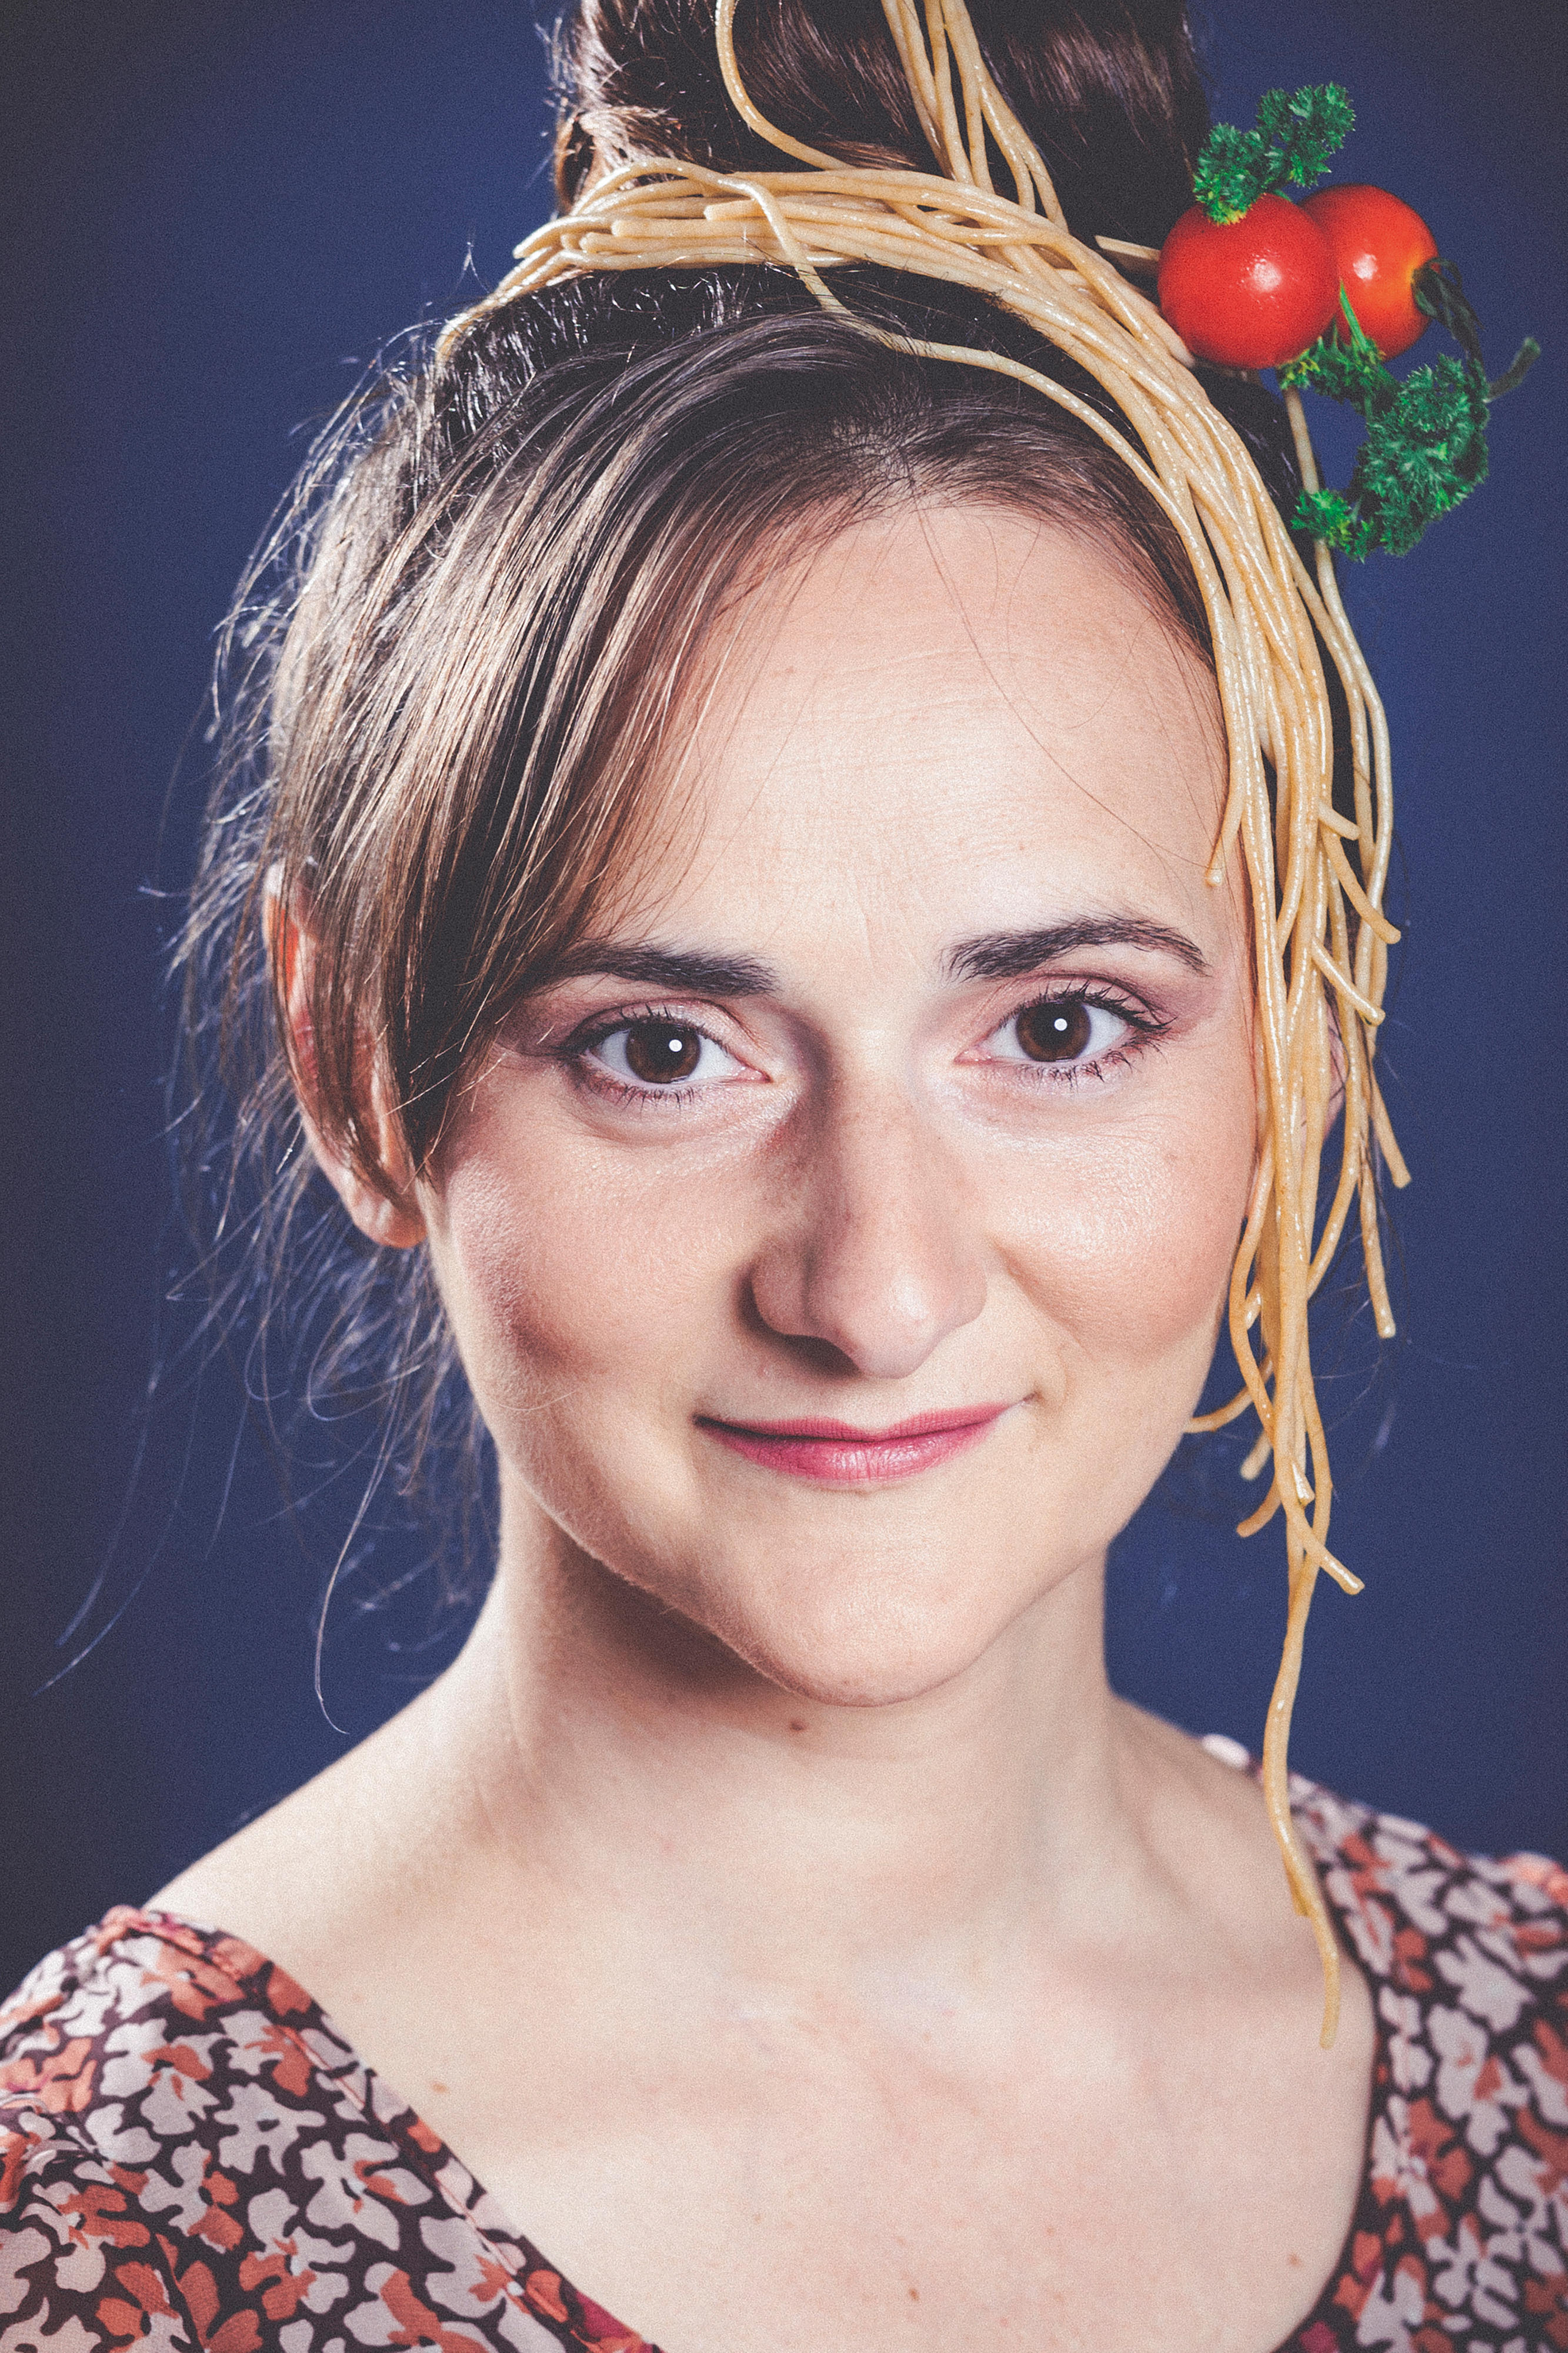 Porträt einer brünetten, lächelnden Frau mit Spaghetti und Tomaten im Haar